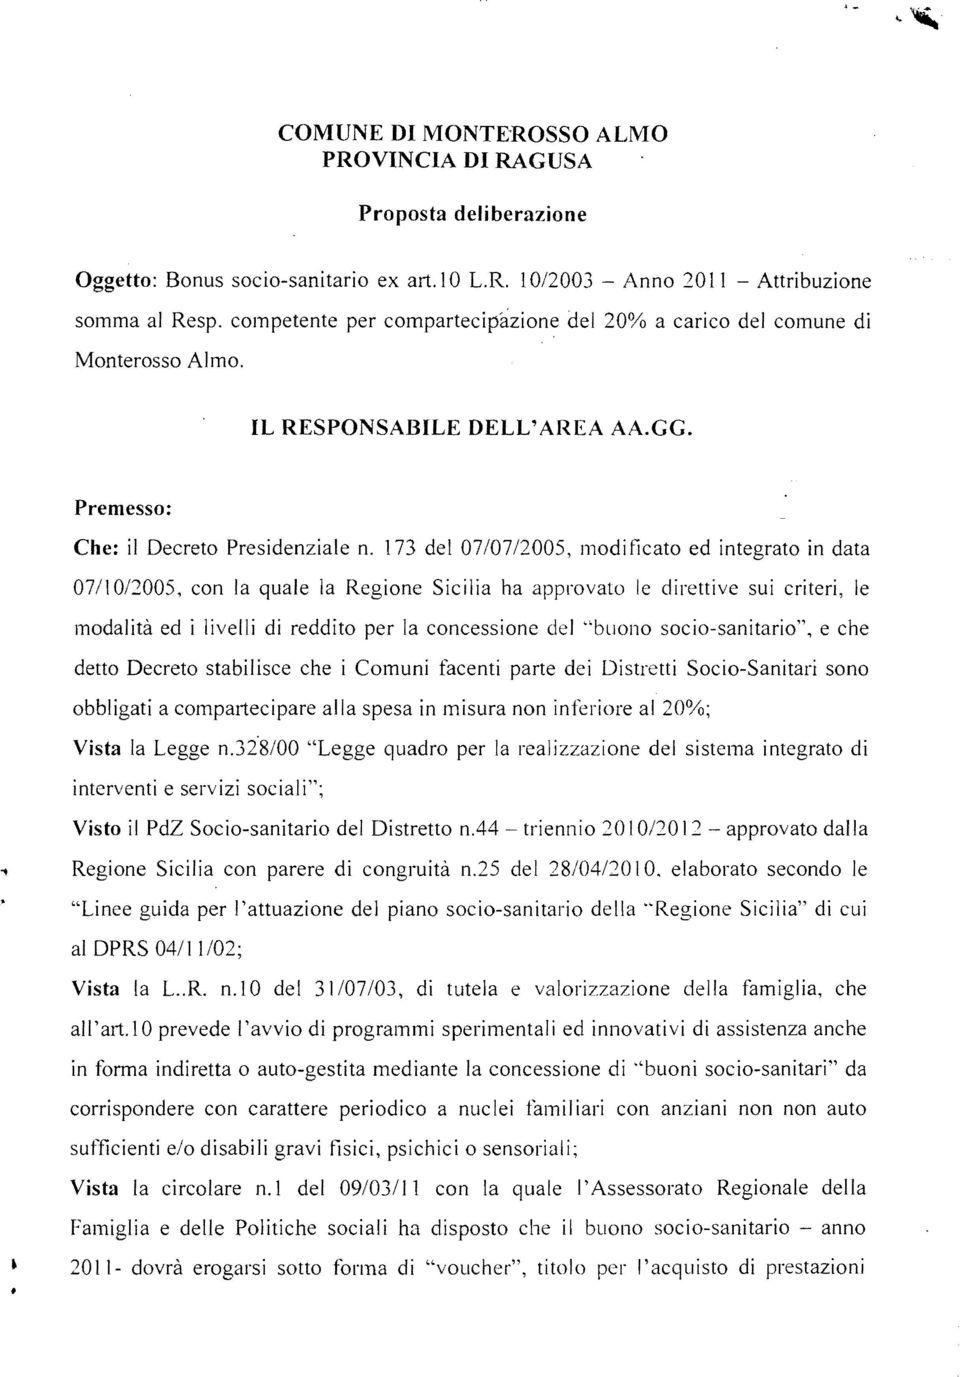 173 del 07/07/2005, modi ficato ed integrato in data 07/1 012005, con la quale la Regione Sicilia ha approvato te direttive sui criteri, le modalità ed i livelli di reddito per la concessione del